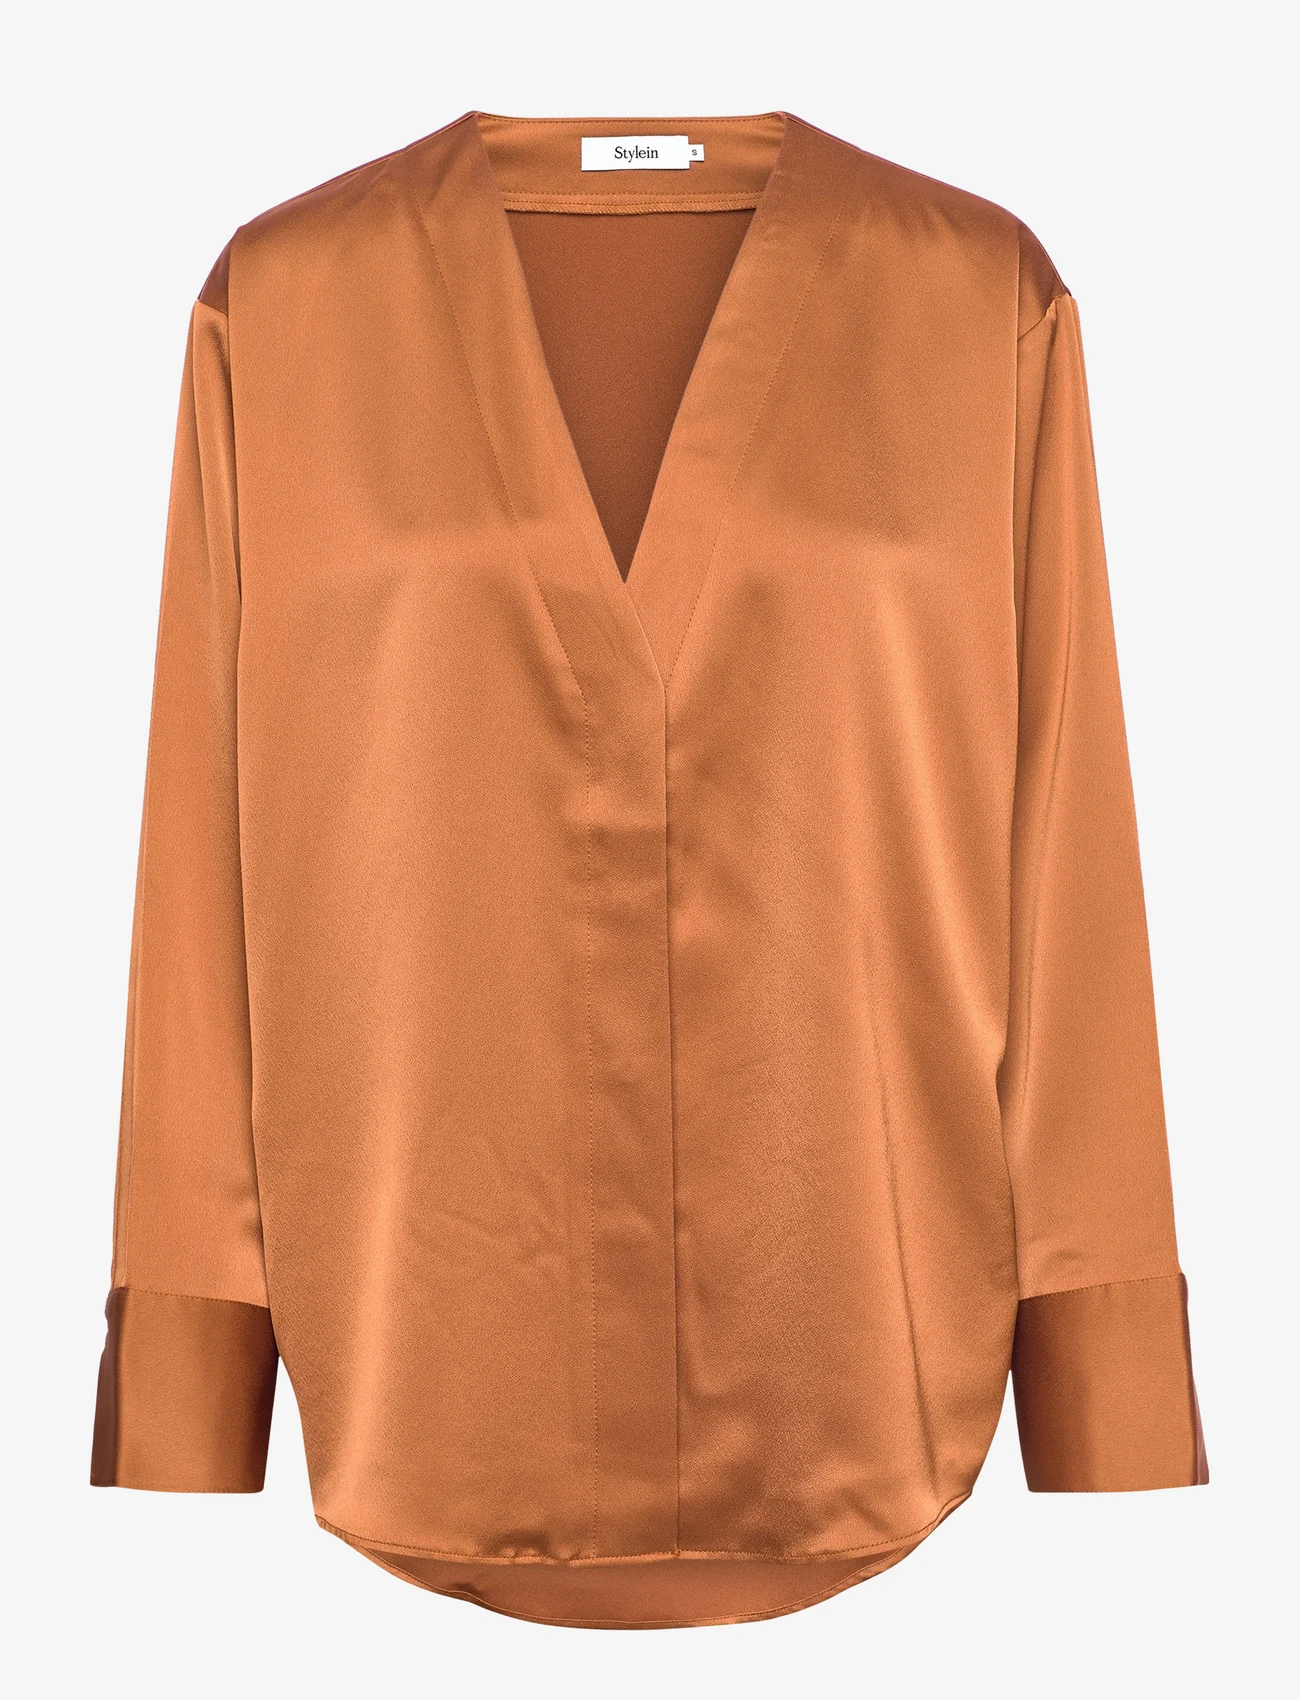 Stylein - MONTONE TOP - long-sleeved blouses - dark ginger - 0